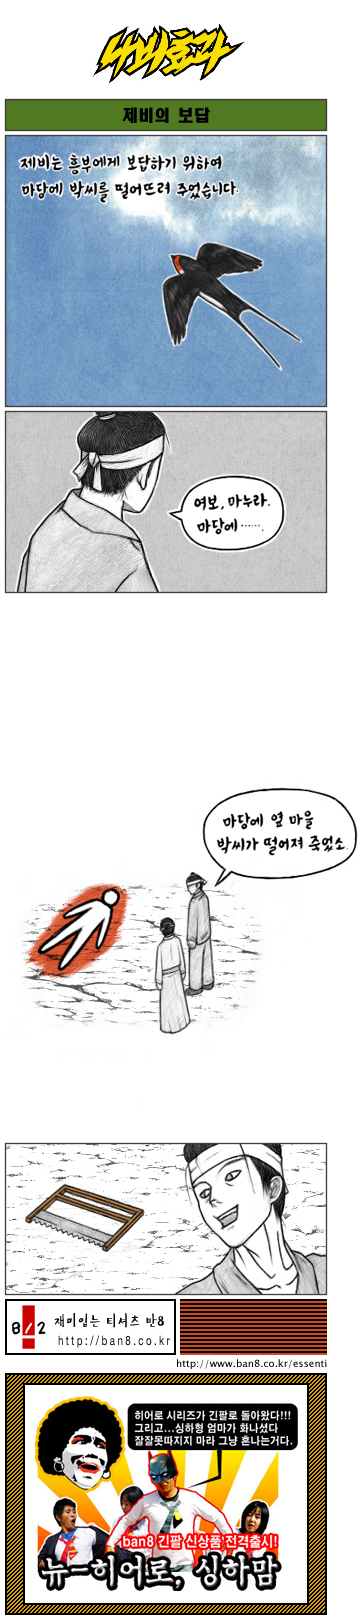 나비효과]제비의 보답